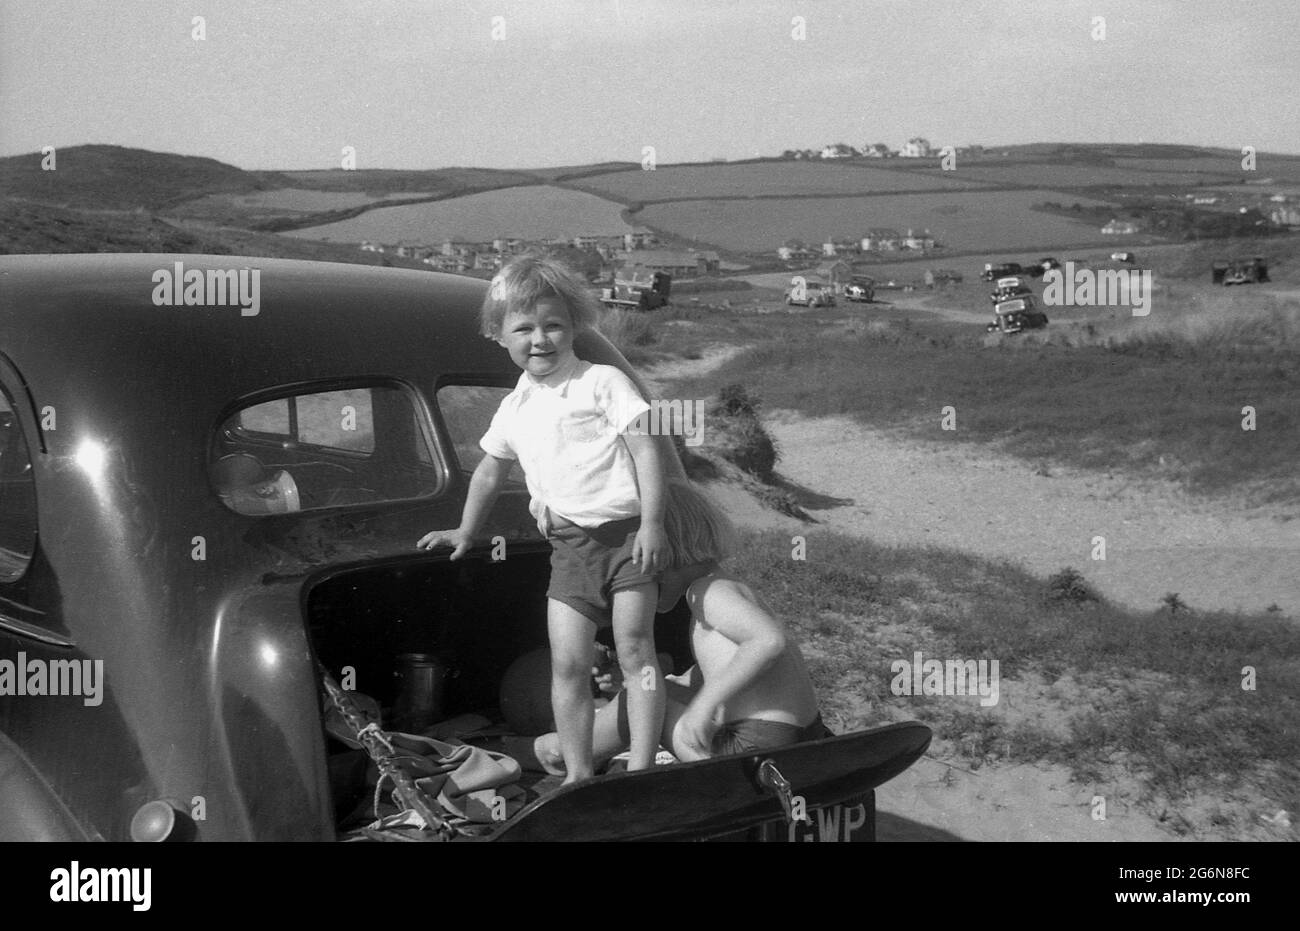 Années 1950, historique, deux petits garçons dans la petite botte ou le tronc rabattable d'une voiture de l'époque, garés sur des dunes de sable, l'un debout sur le hayon articulé, l'autre assis sur lui, Angleterre, Royaume-Uni. D'autres voitures de l'époque peuvent être vues sur les dunes au loin. Banque D'Images